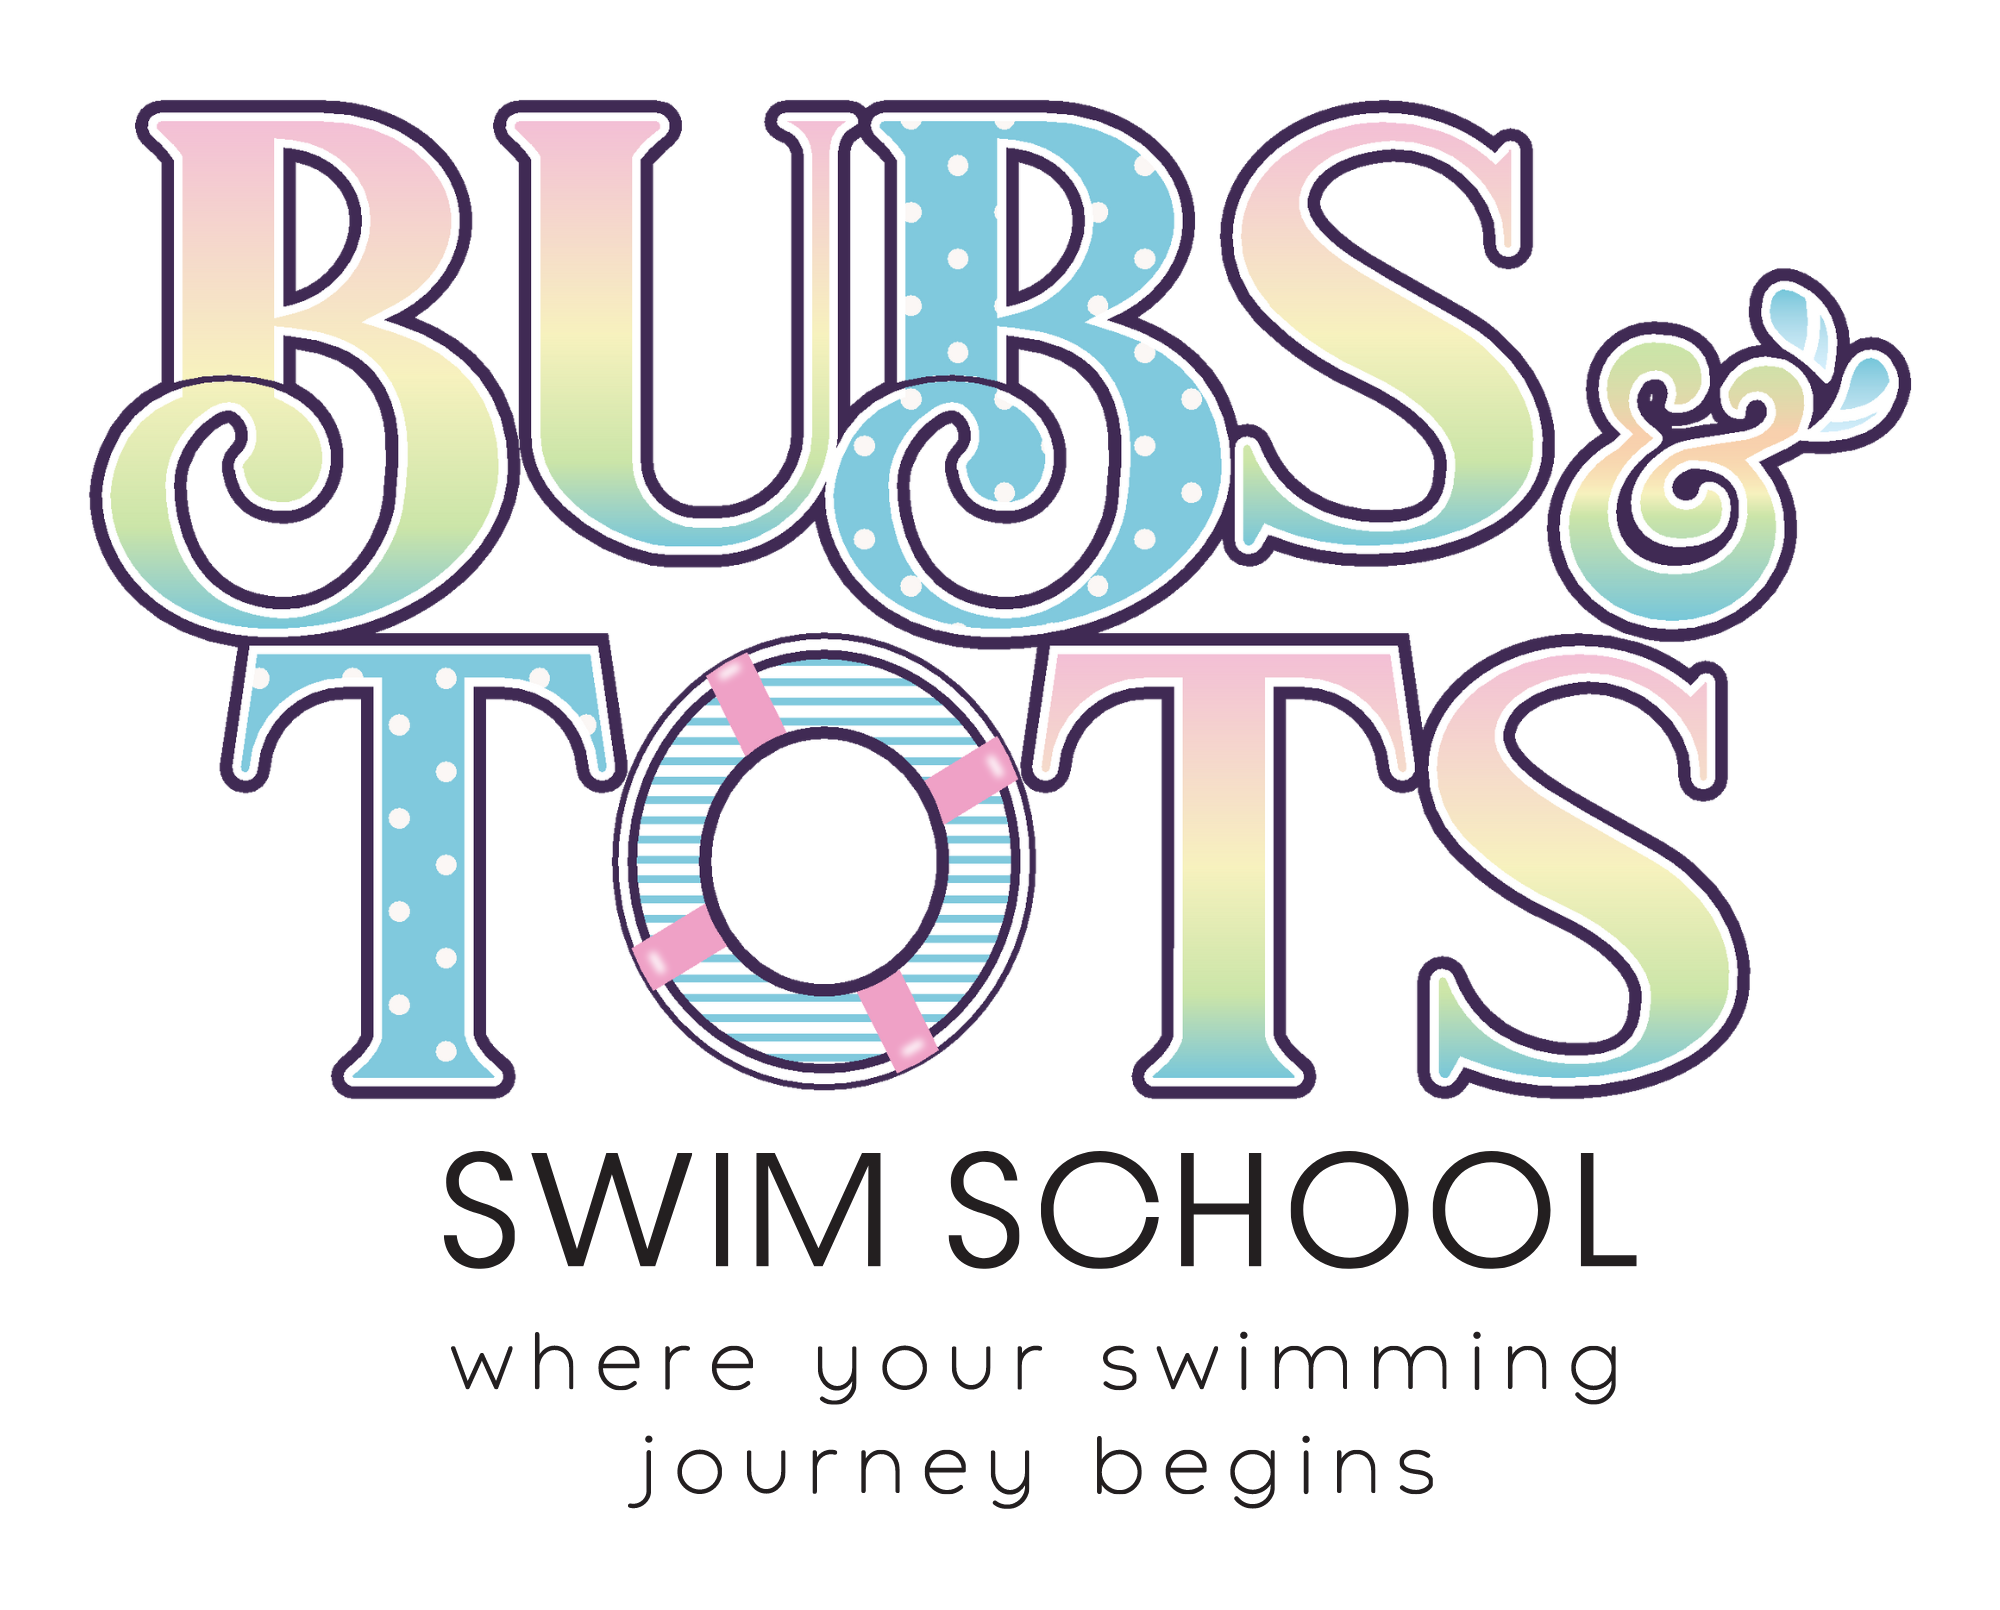 Bubs and Tots Aquatic Pte Ltd